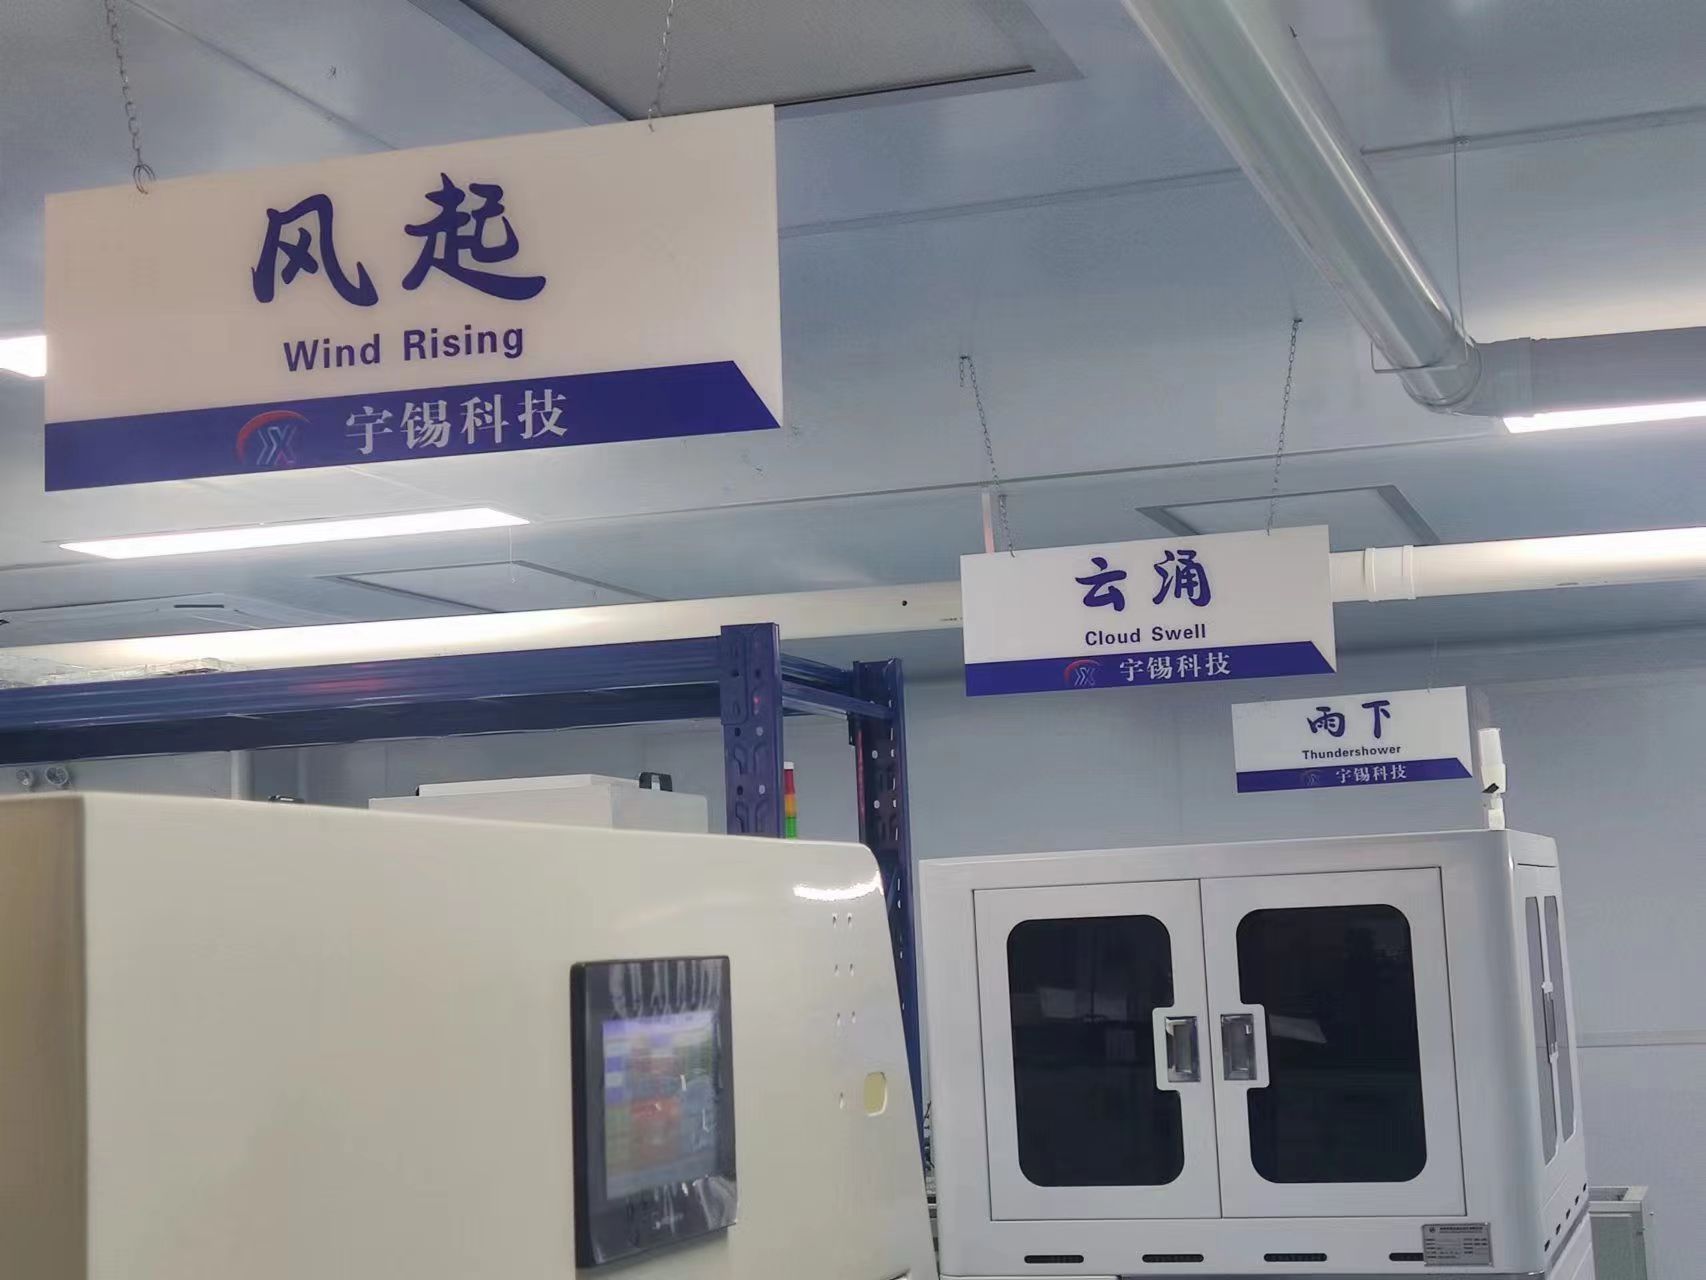 深圳宇锡科技专注-40℃低温液晶屏带触摸屏所适配的全国产化板卡研发&生产